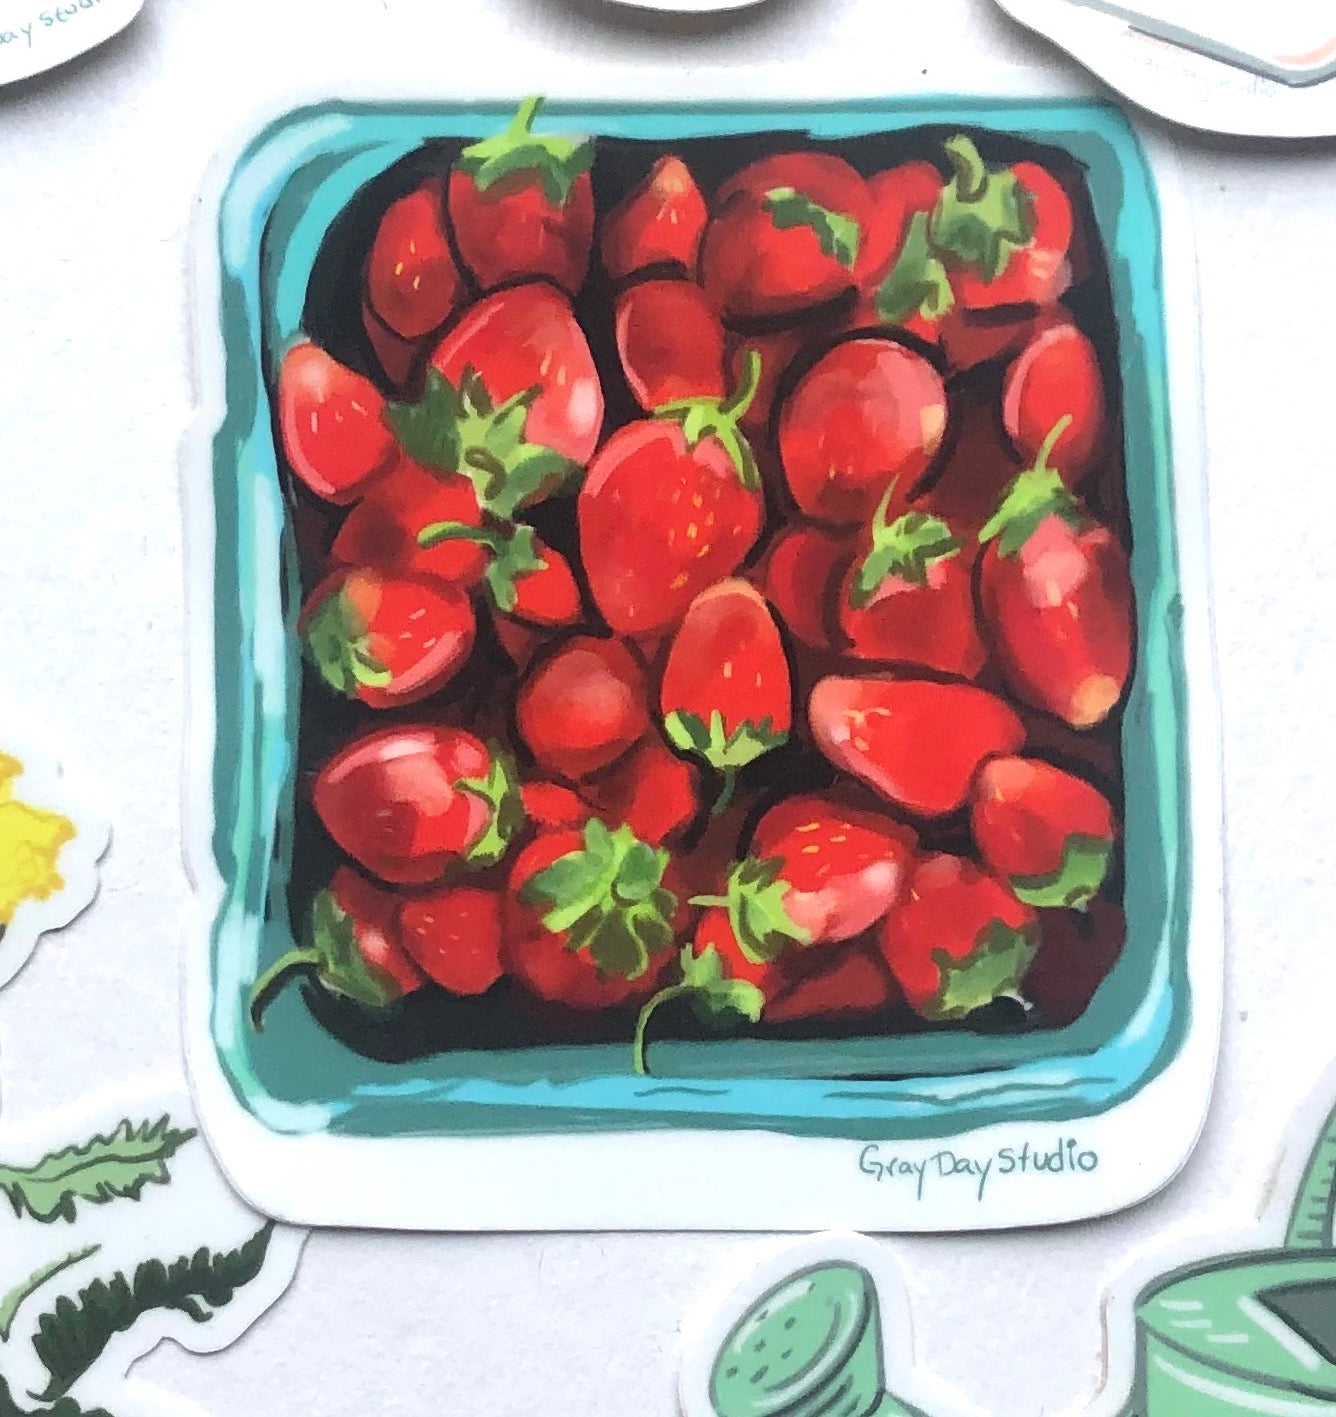 strawberry harvest sticker, illustrated by Maine artist Abigail Gray Swartz